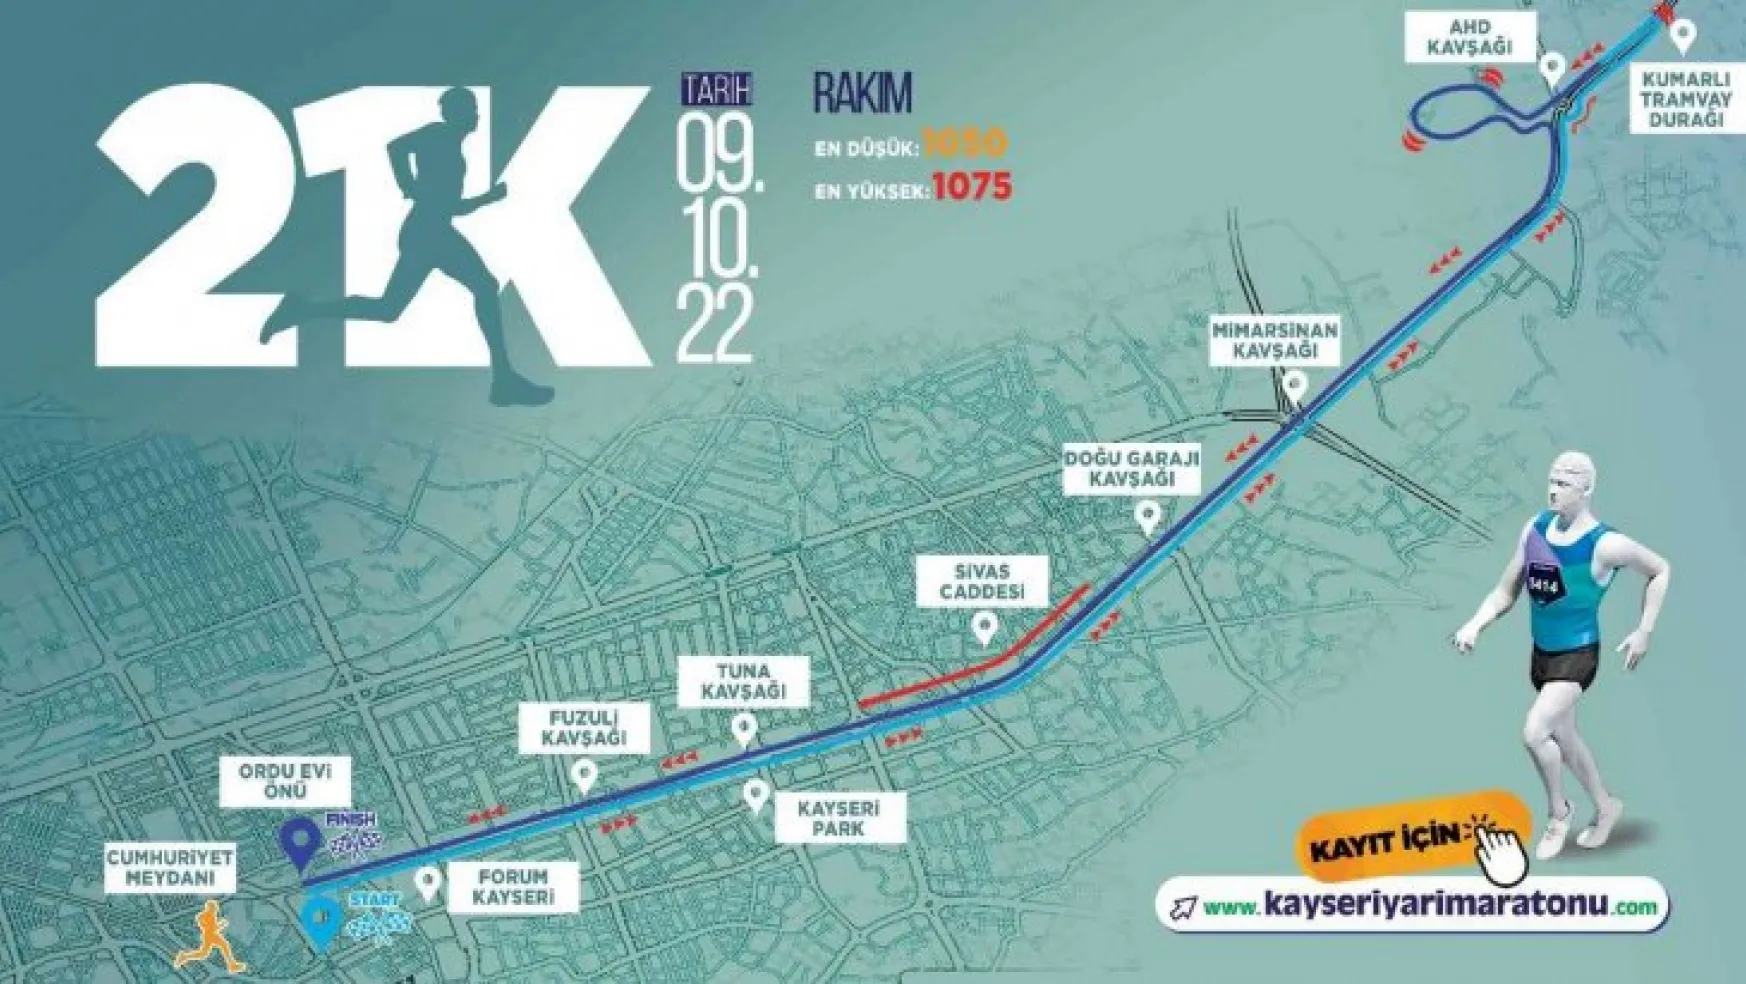 Büyükşehir'in Uluslararası Kayseri Yarı Maratonu'nda heyecan artıyor